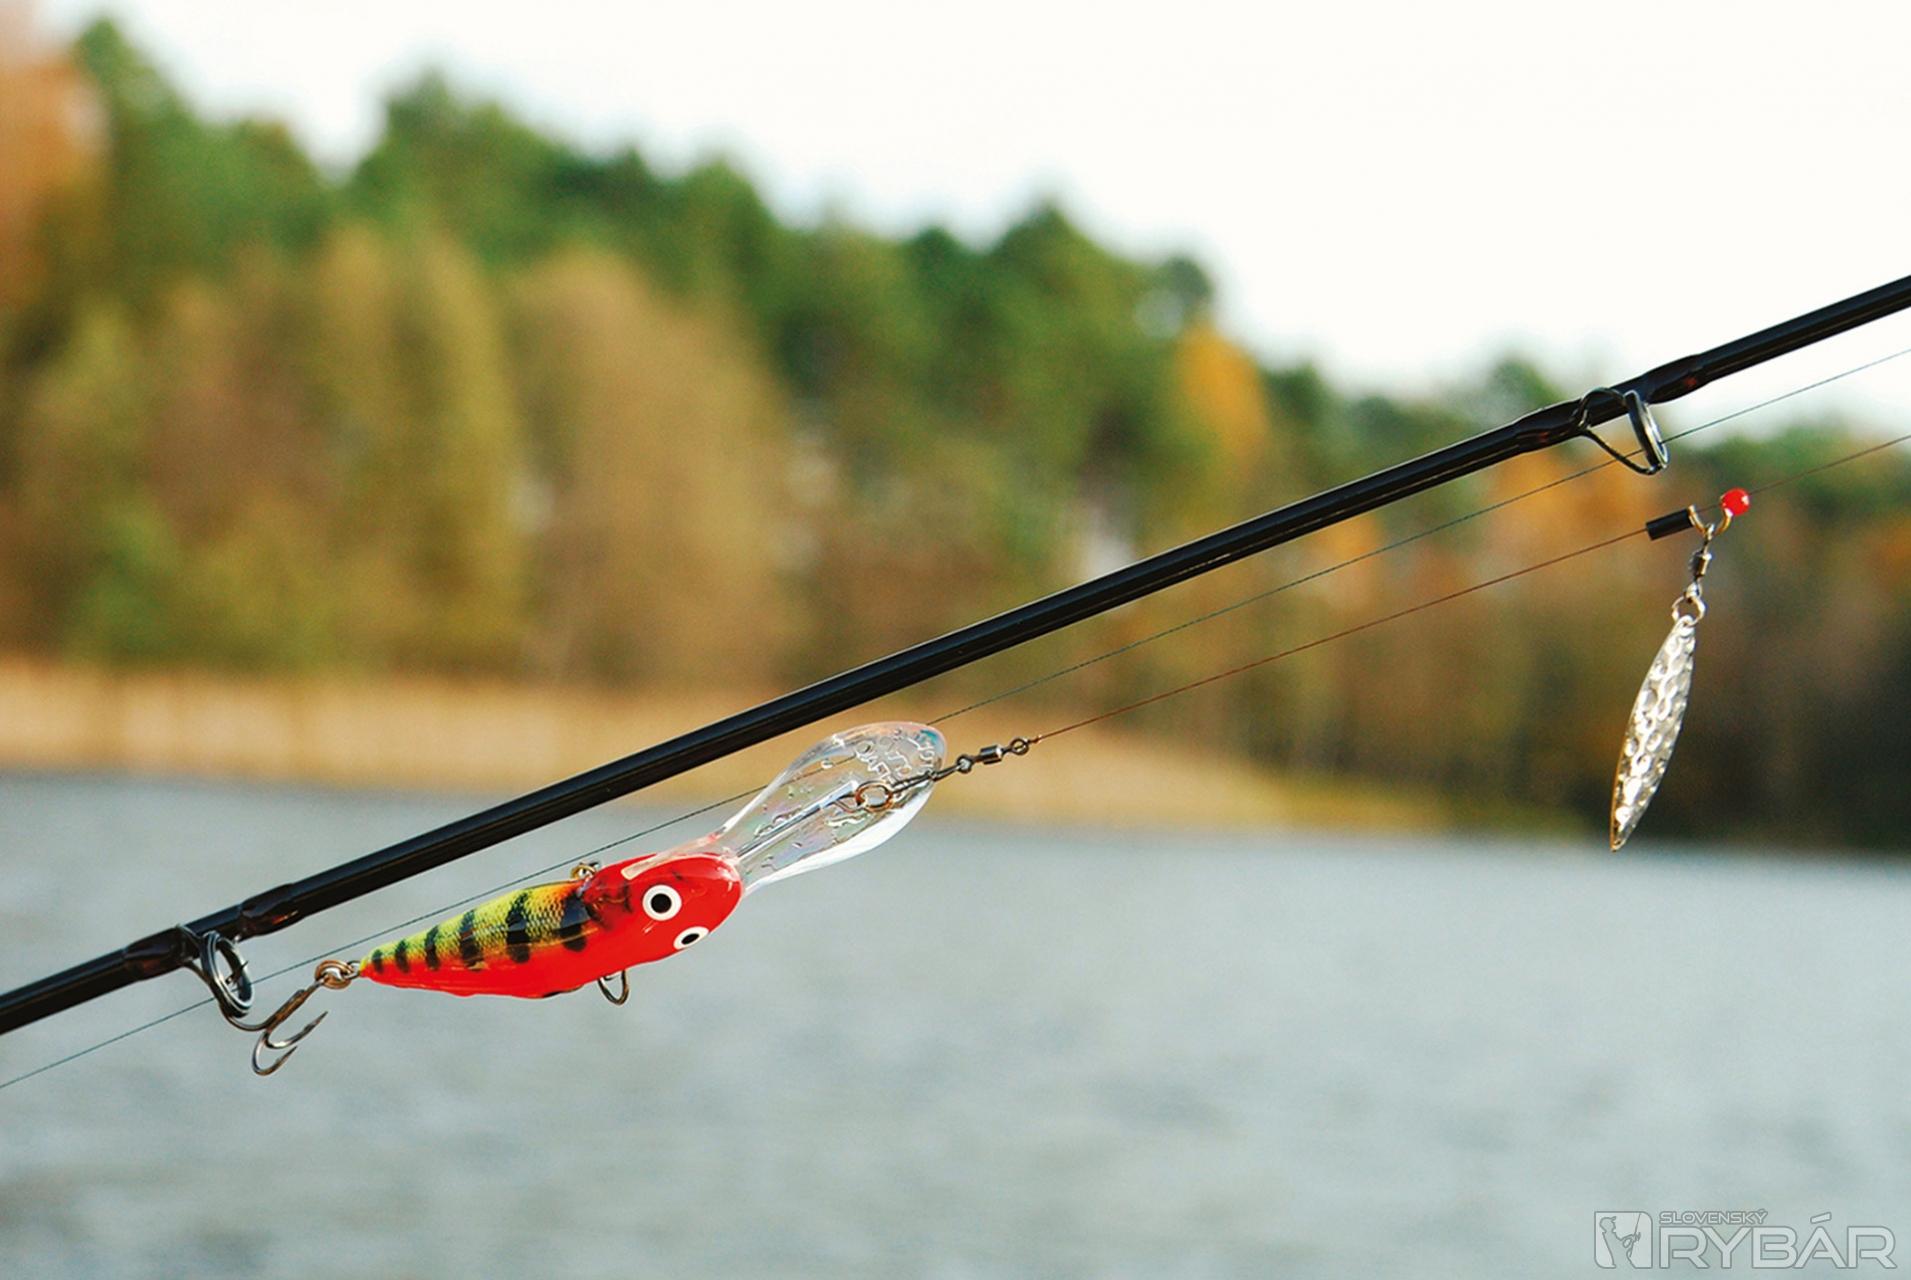 Рыбалка на спиннинг | спиннинг клаб - советы для начинающих рыбаков
спиннинг для твичинга (воблеров): топ 10 лучших удилищ